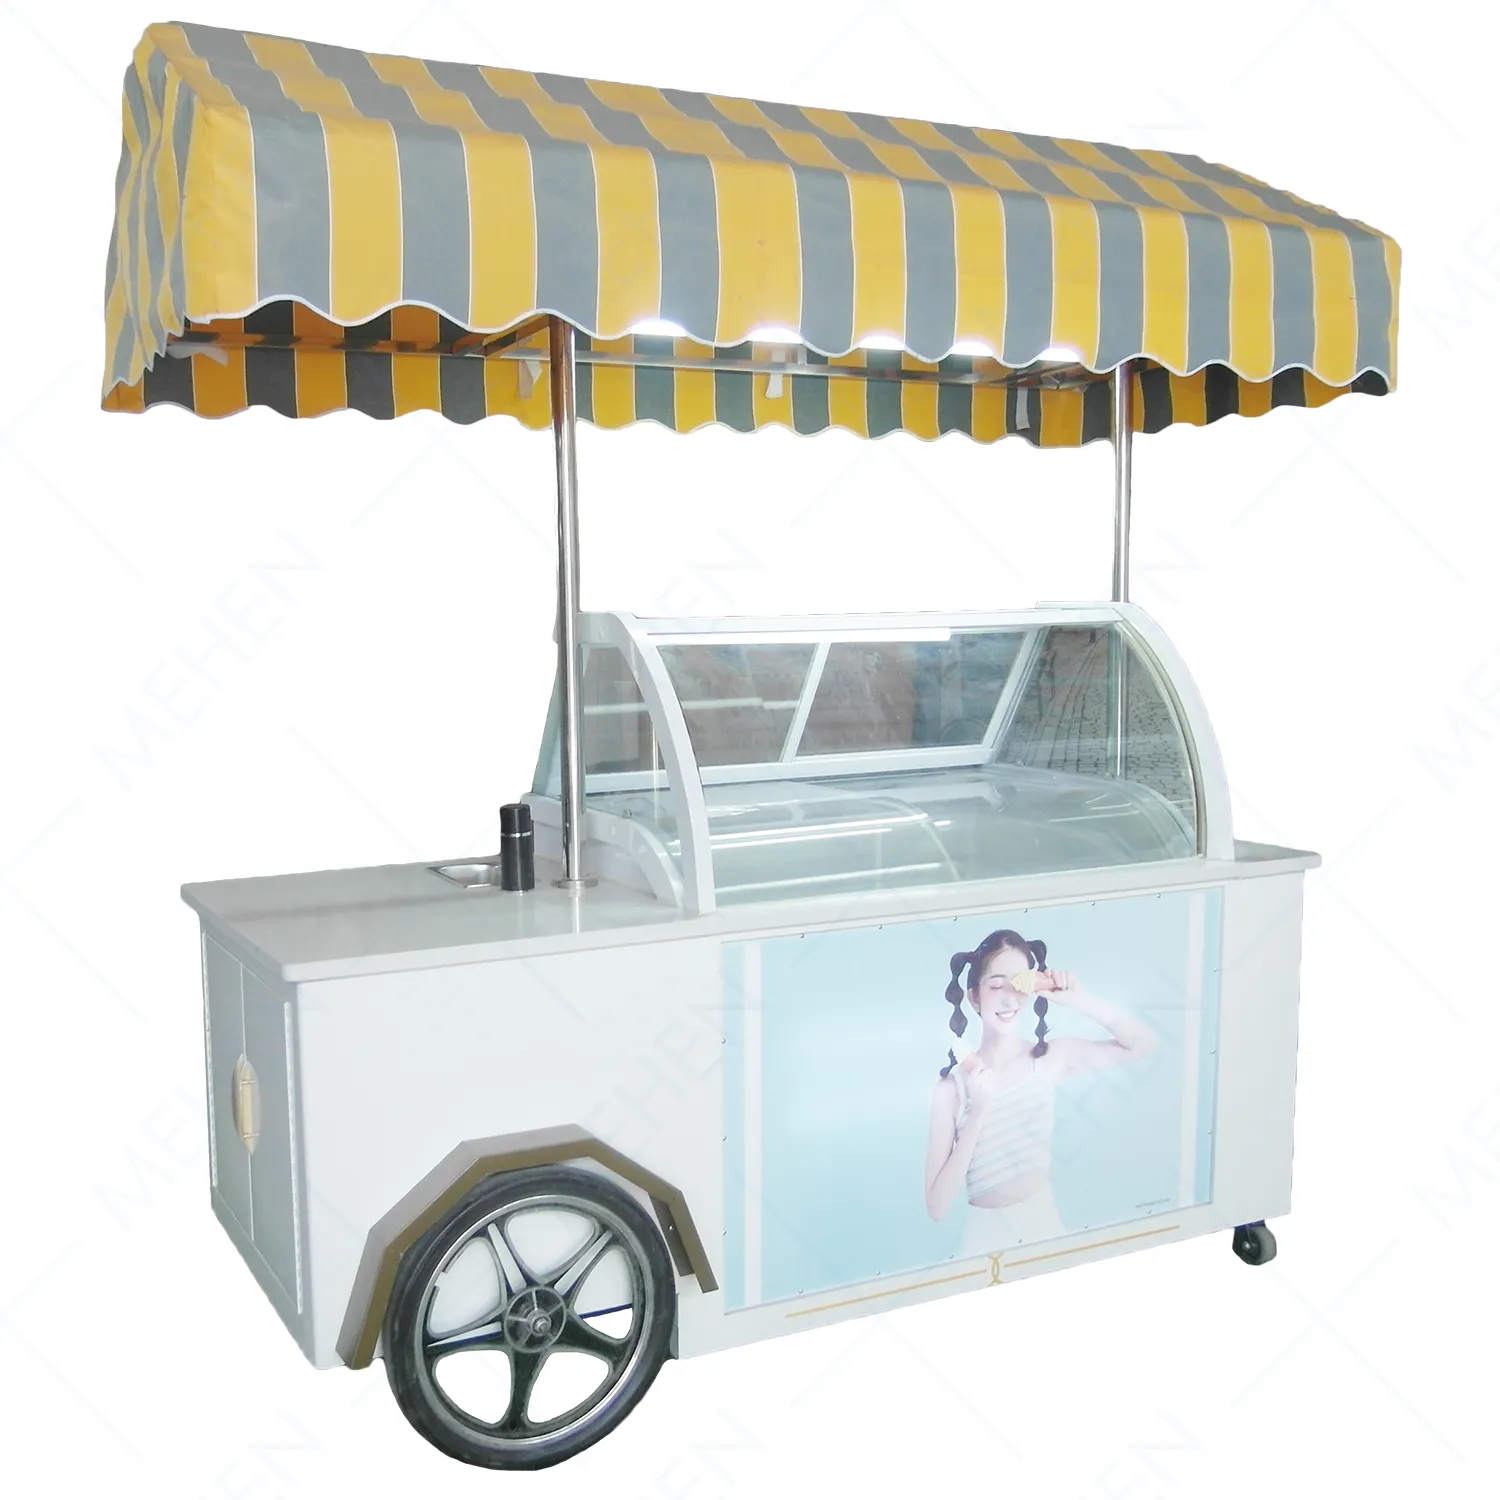 Carrello a spinta per gelato Mobile pieghevole per vendita di camion per barbecue in concessione rimorchio alimentare per congelatore Jiangsu personalizzato messicano